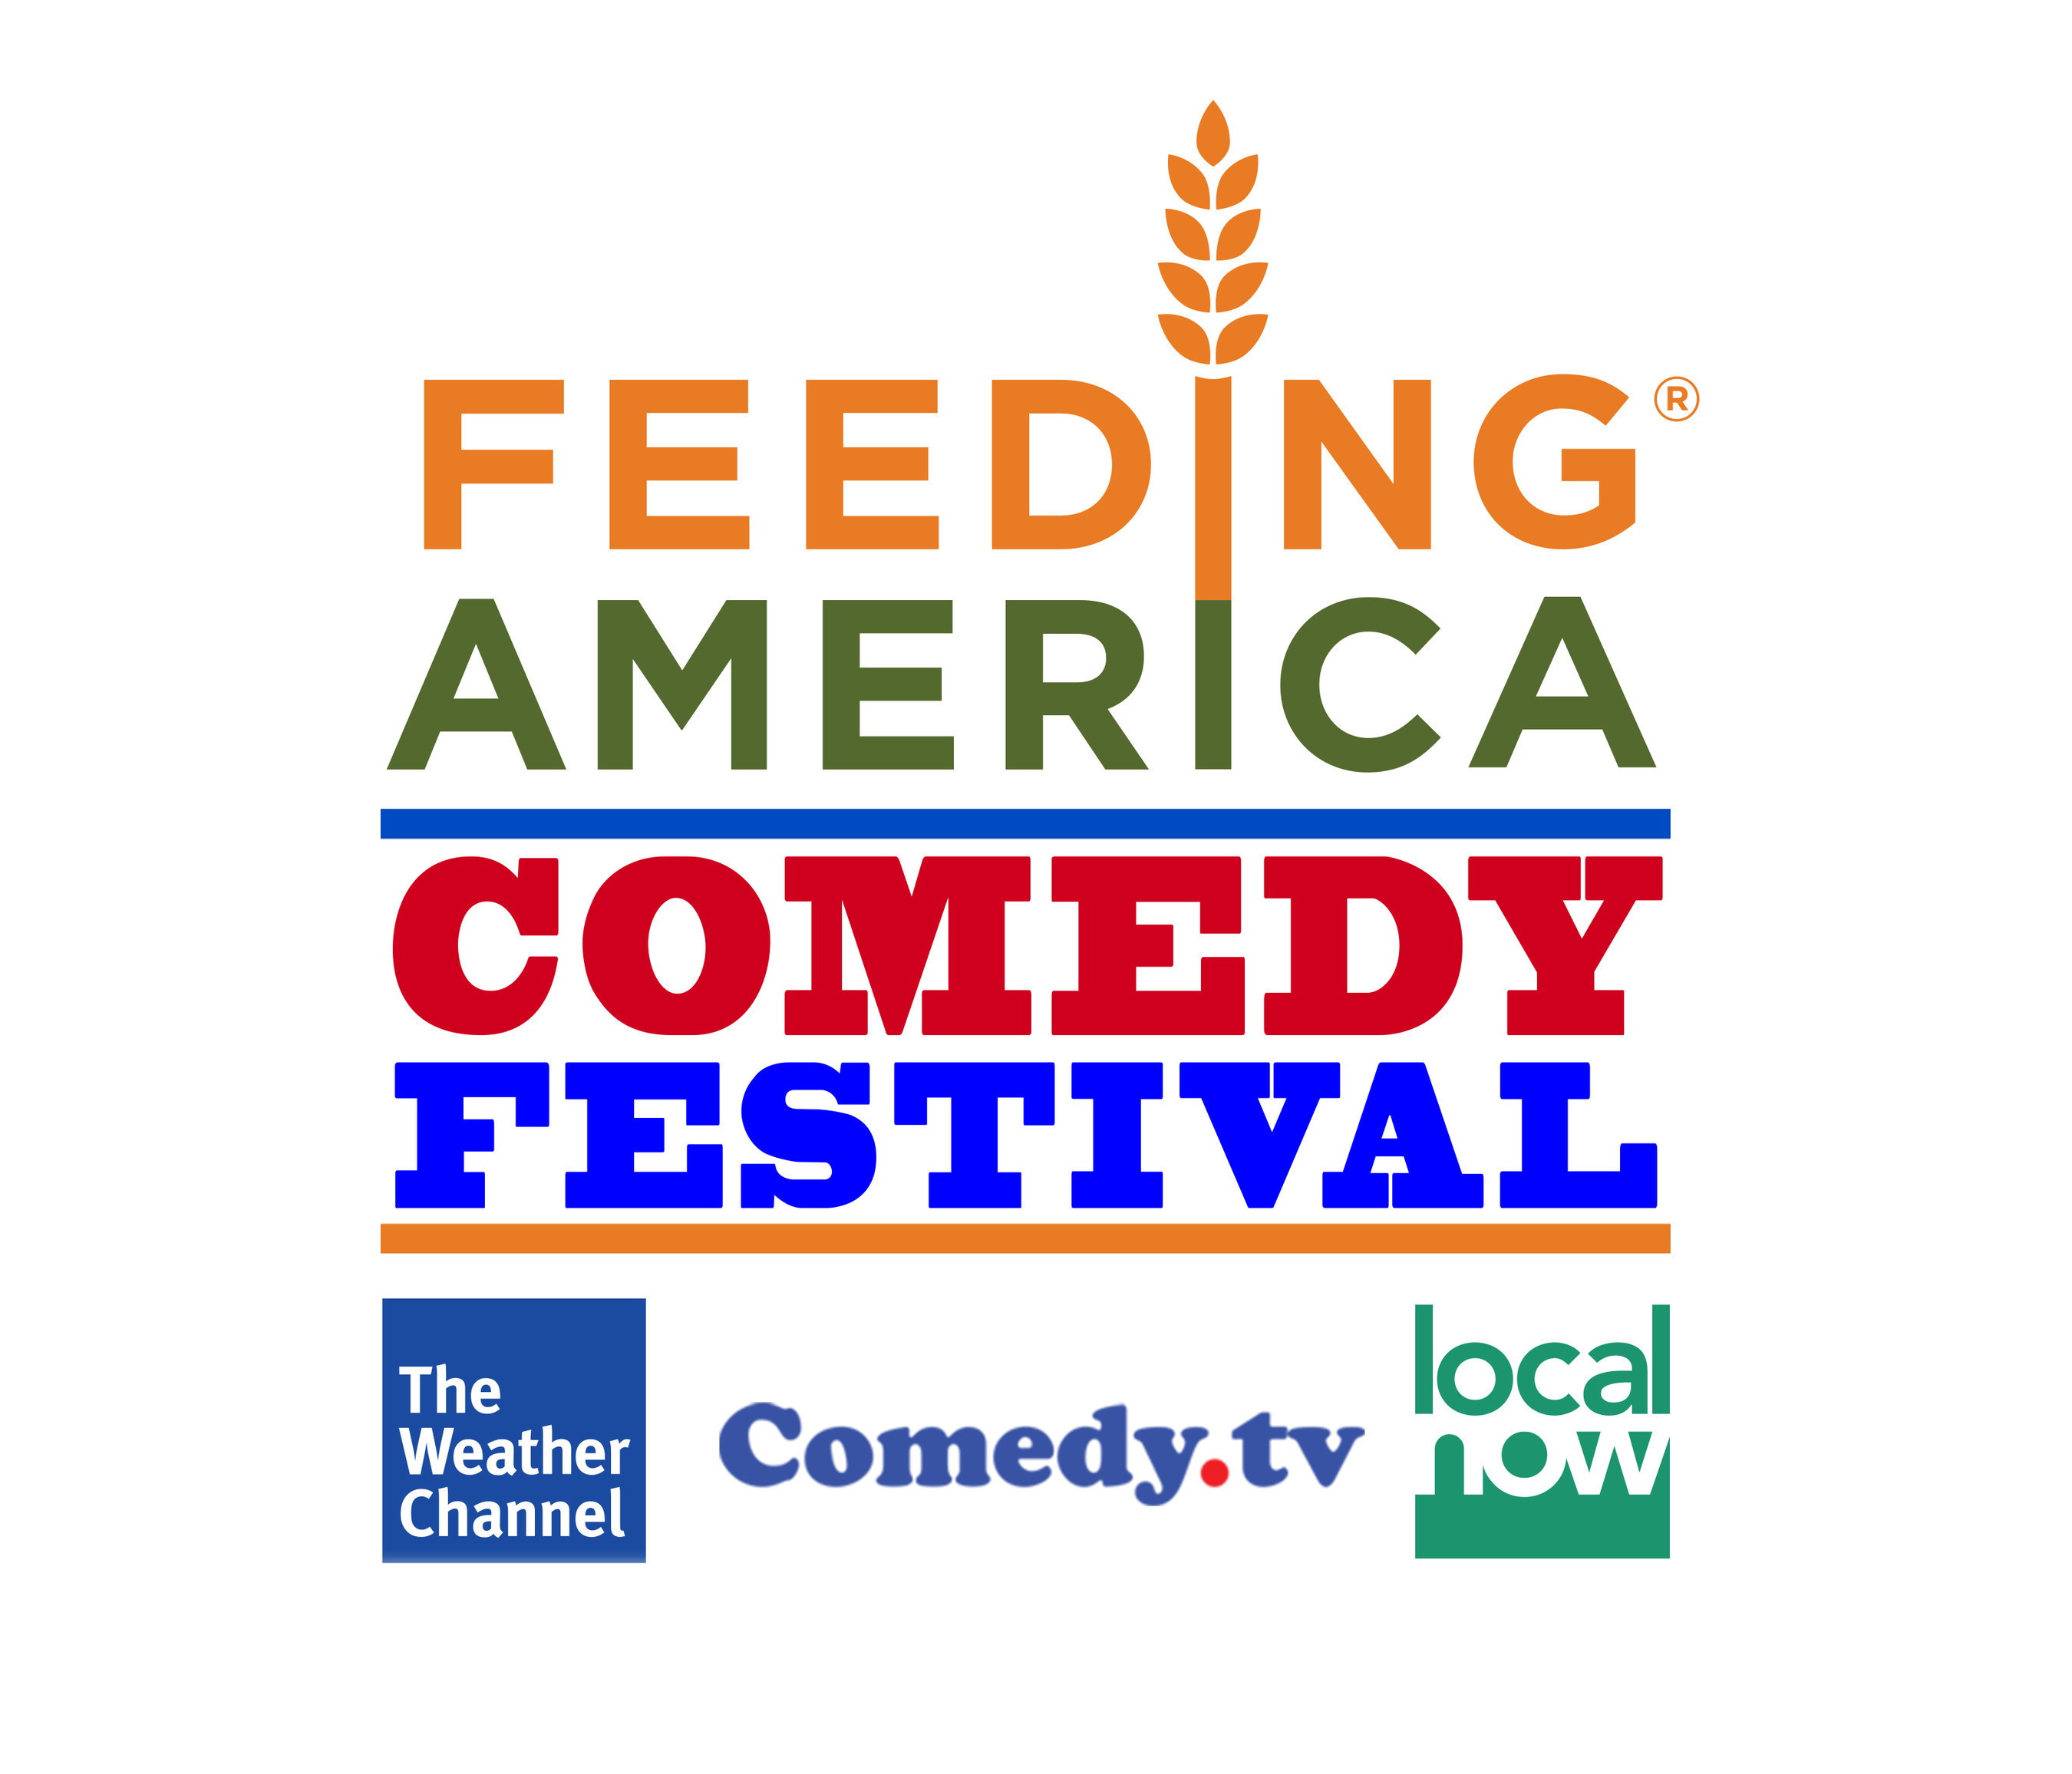 https://mma.prnewswire.com/media/1162690/Feeding_America_Comedy_Festival_Logo.jpg?p=publish